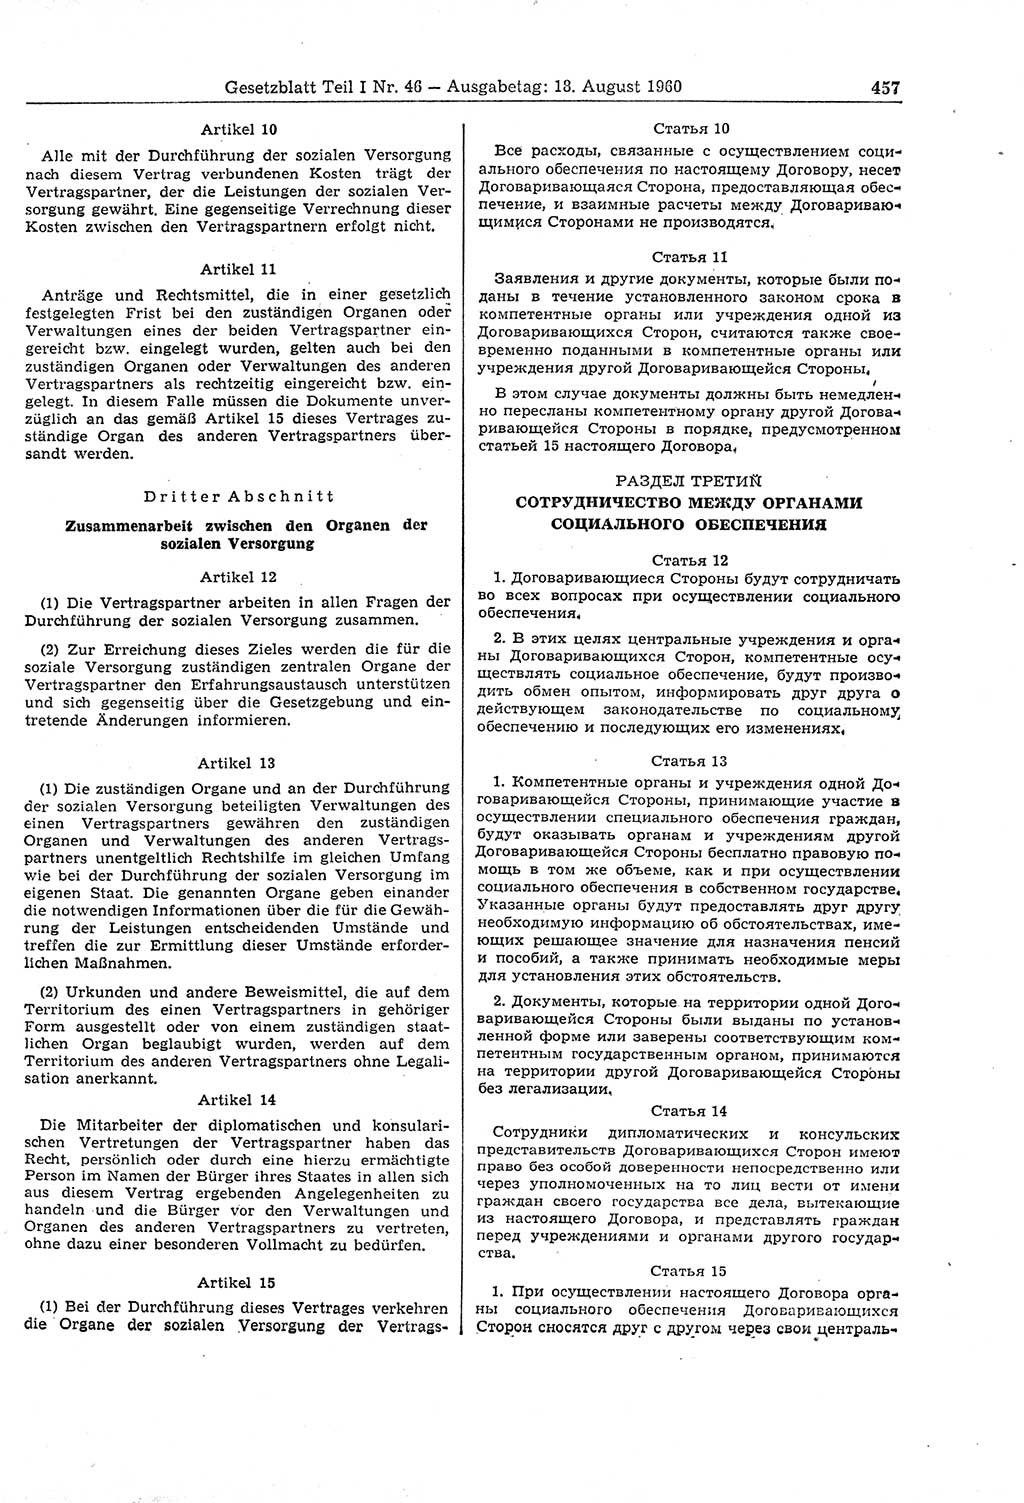 Gesetzblatt (GBl.) der Deutschen Demokratischen Republik (DDR) Teil Ⅰ 1960, Seite 457 (GBl. DDR Ⅰ 1960, S. 457)